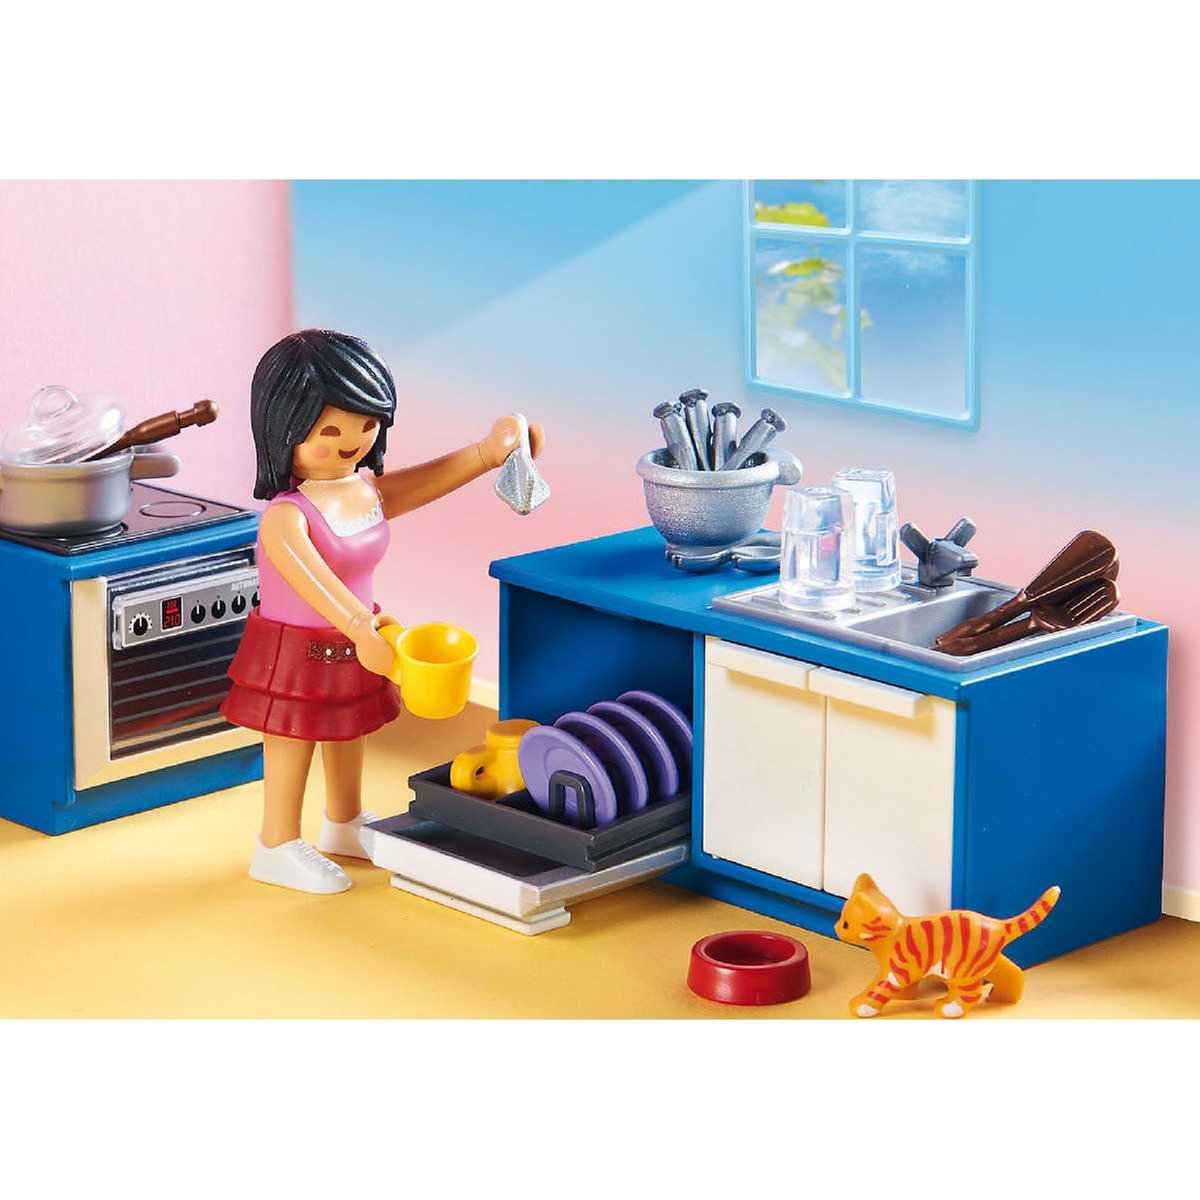 Playmobil - Cocina - 70206 | Casa Muñecas | Toys"R"Us España